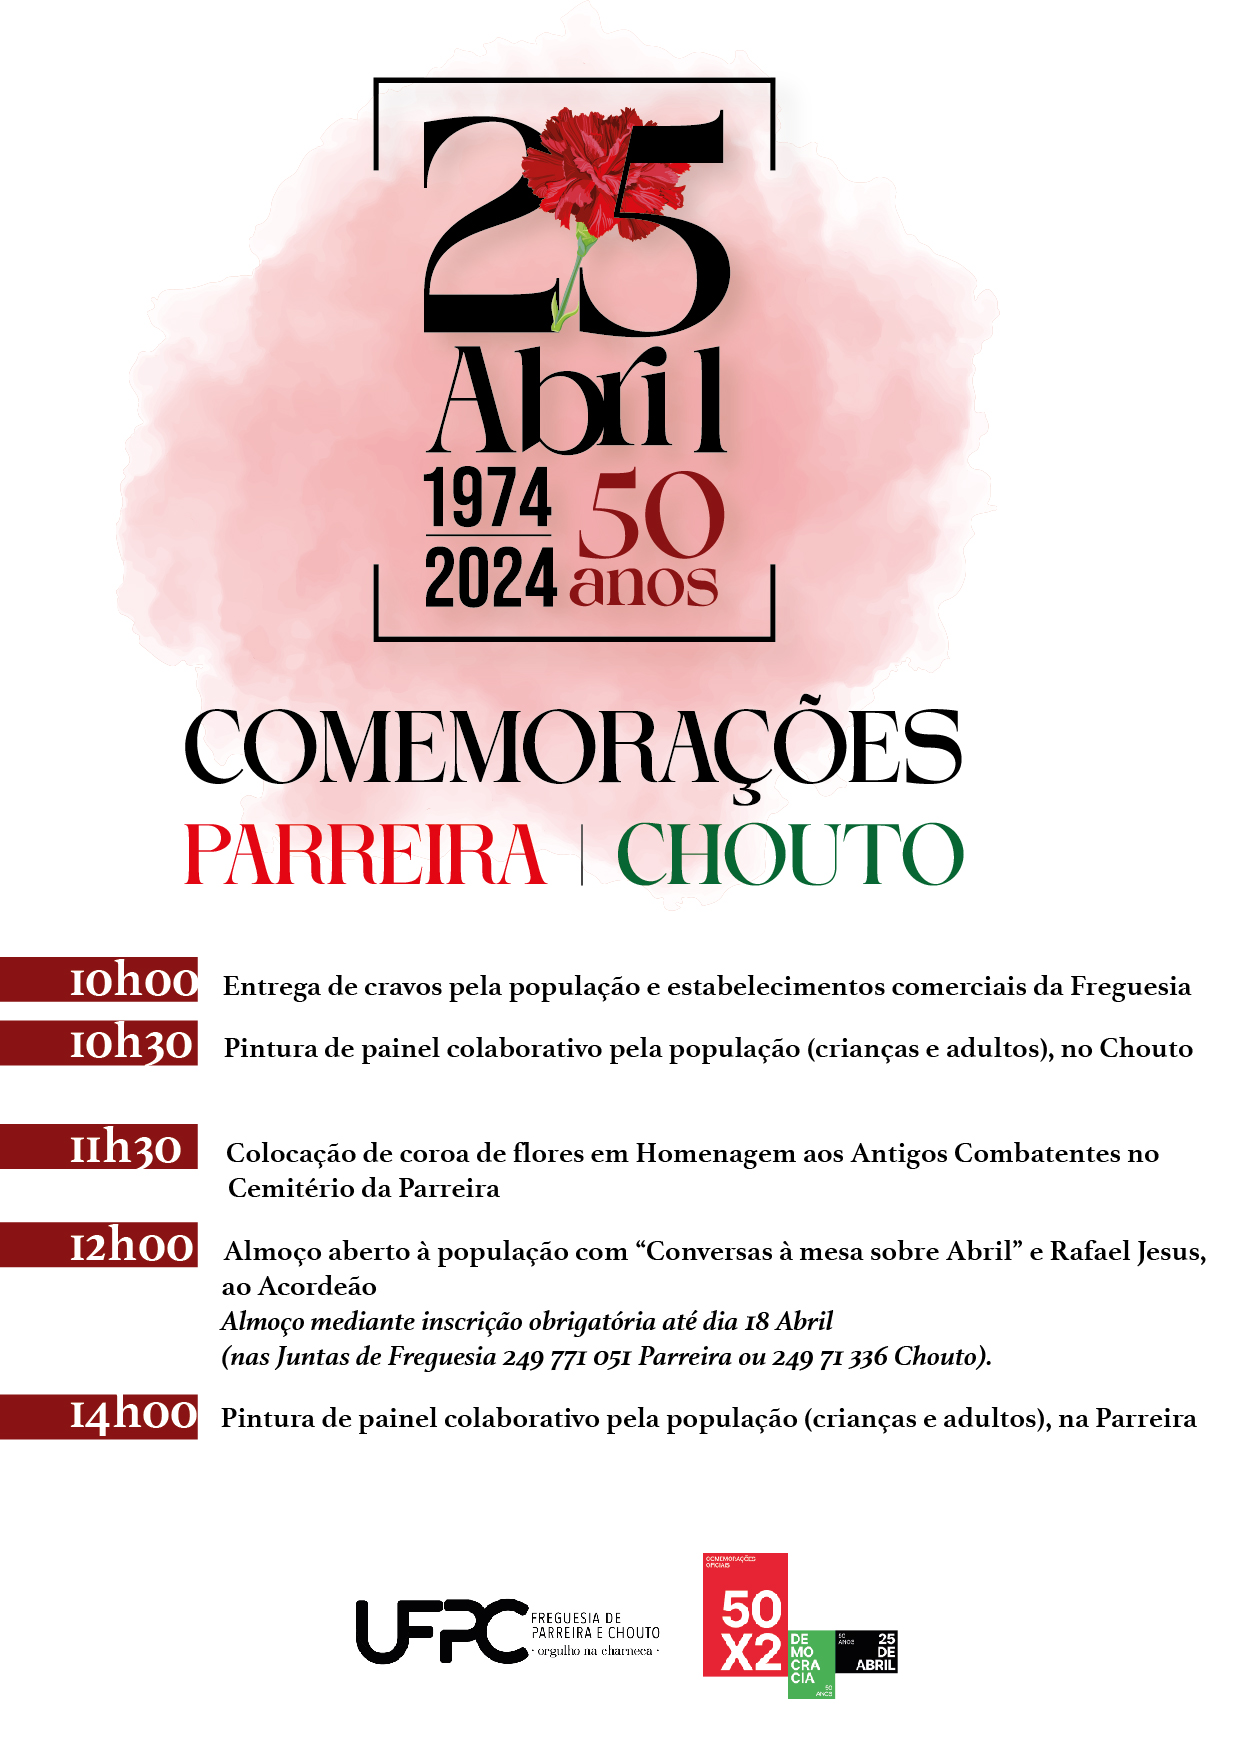 Capa Oficial do Evento Comemorações dos 50 anos do 25 de Abril - UFPC